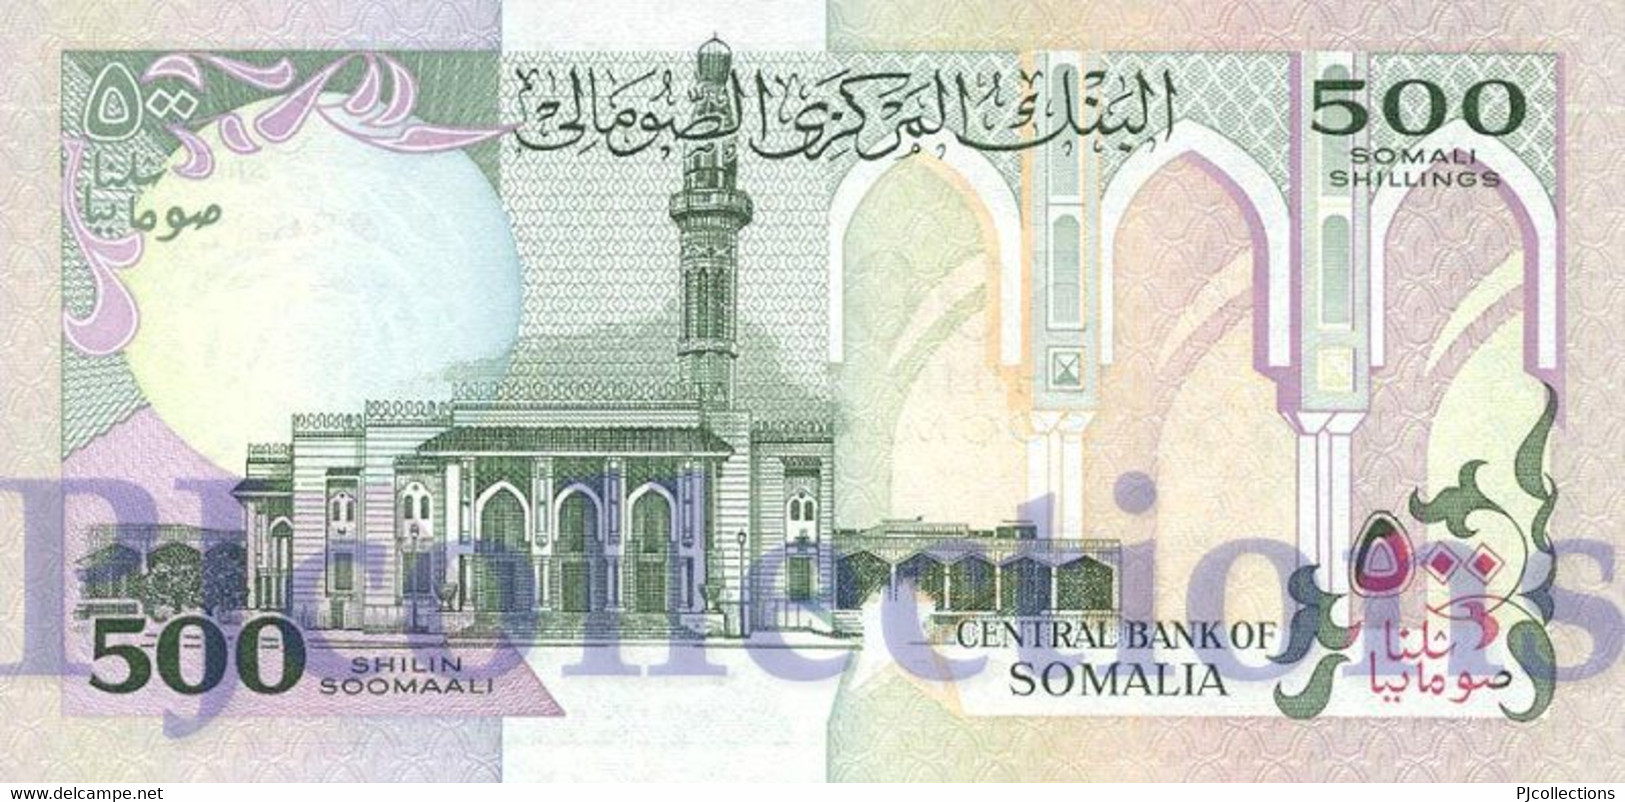 LOT SOMALIA 500 SHILLINGS 1996 PICK 36c UNC X 5 PCS - Somalia